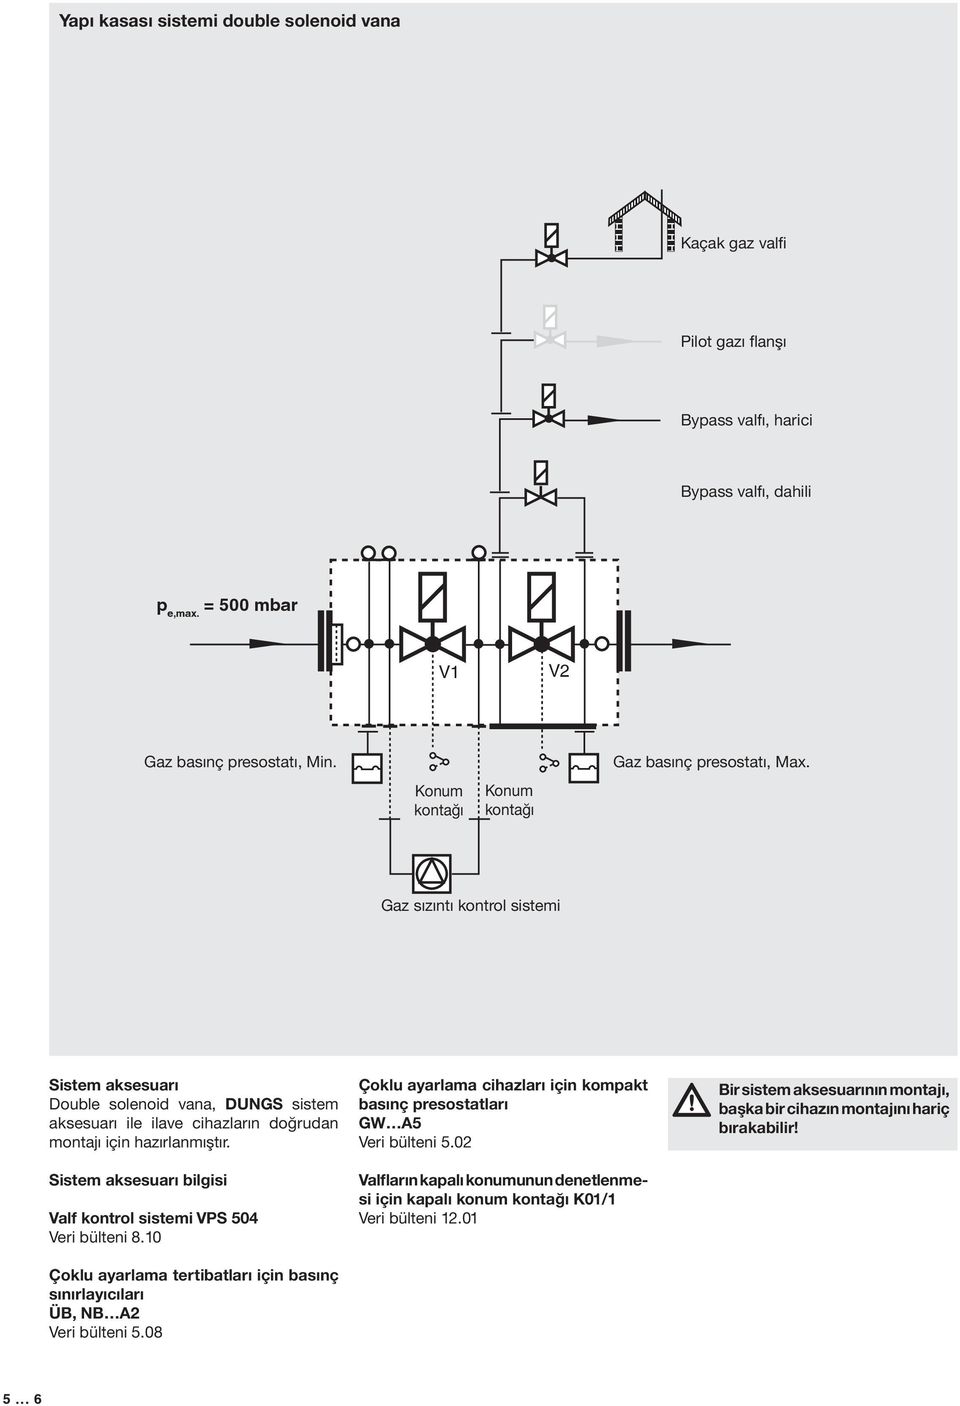 Gaz sızıntı kontrol sistemi Sistem aksesarı Doble solenoid vana, DUNGS sistem aksesarı ile ilave cihazların doğrdan montajı için hazırlanmıştır.